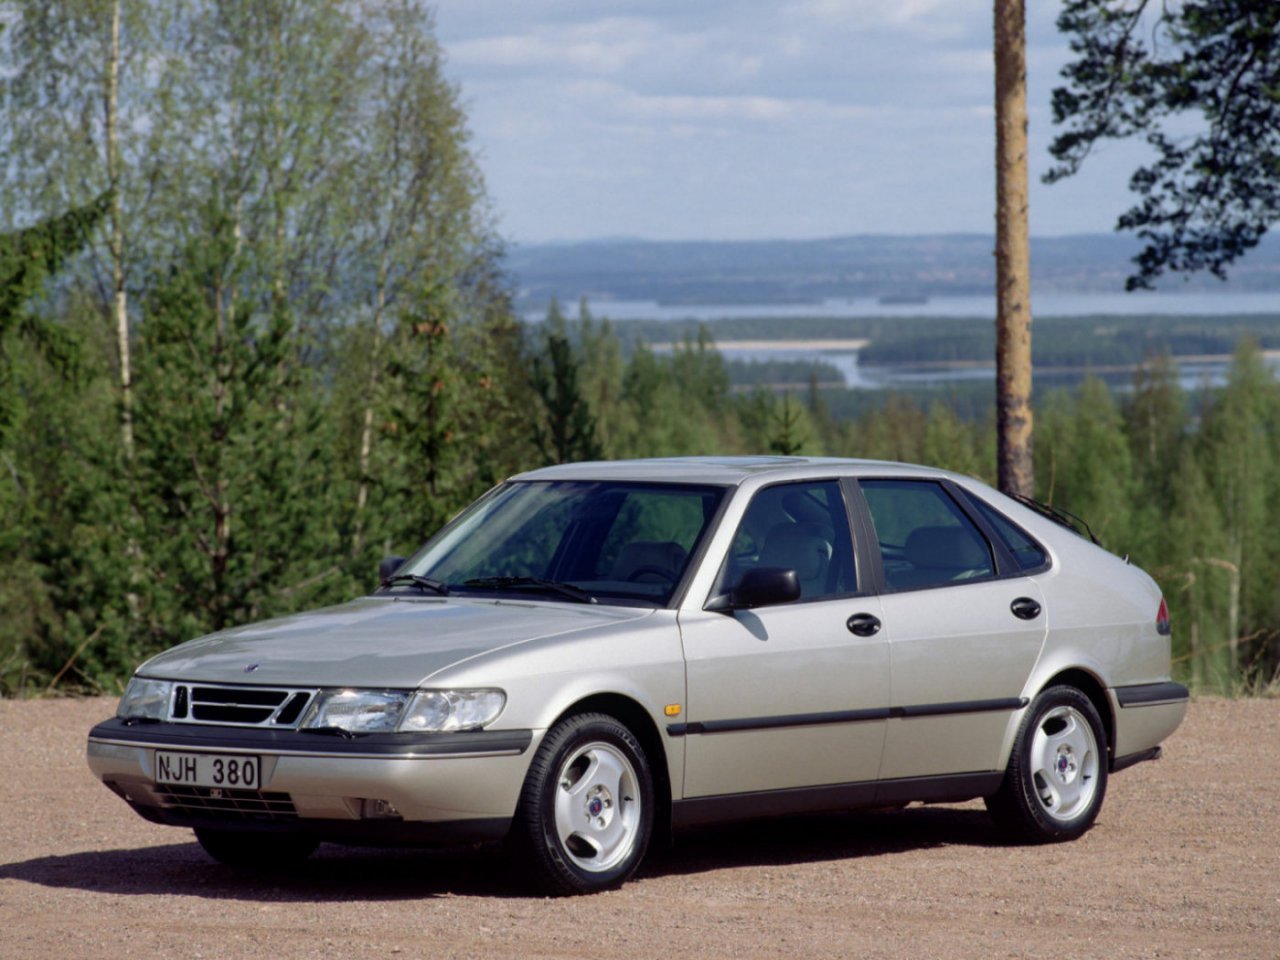 Расход газа шести комплектаций хэтчбека пять дверей Saab 900. Разница стоимости заправки газом и бензином. Автономный пробег до и после установки ГБО.